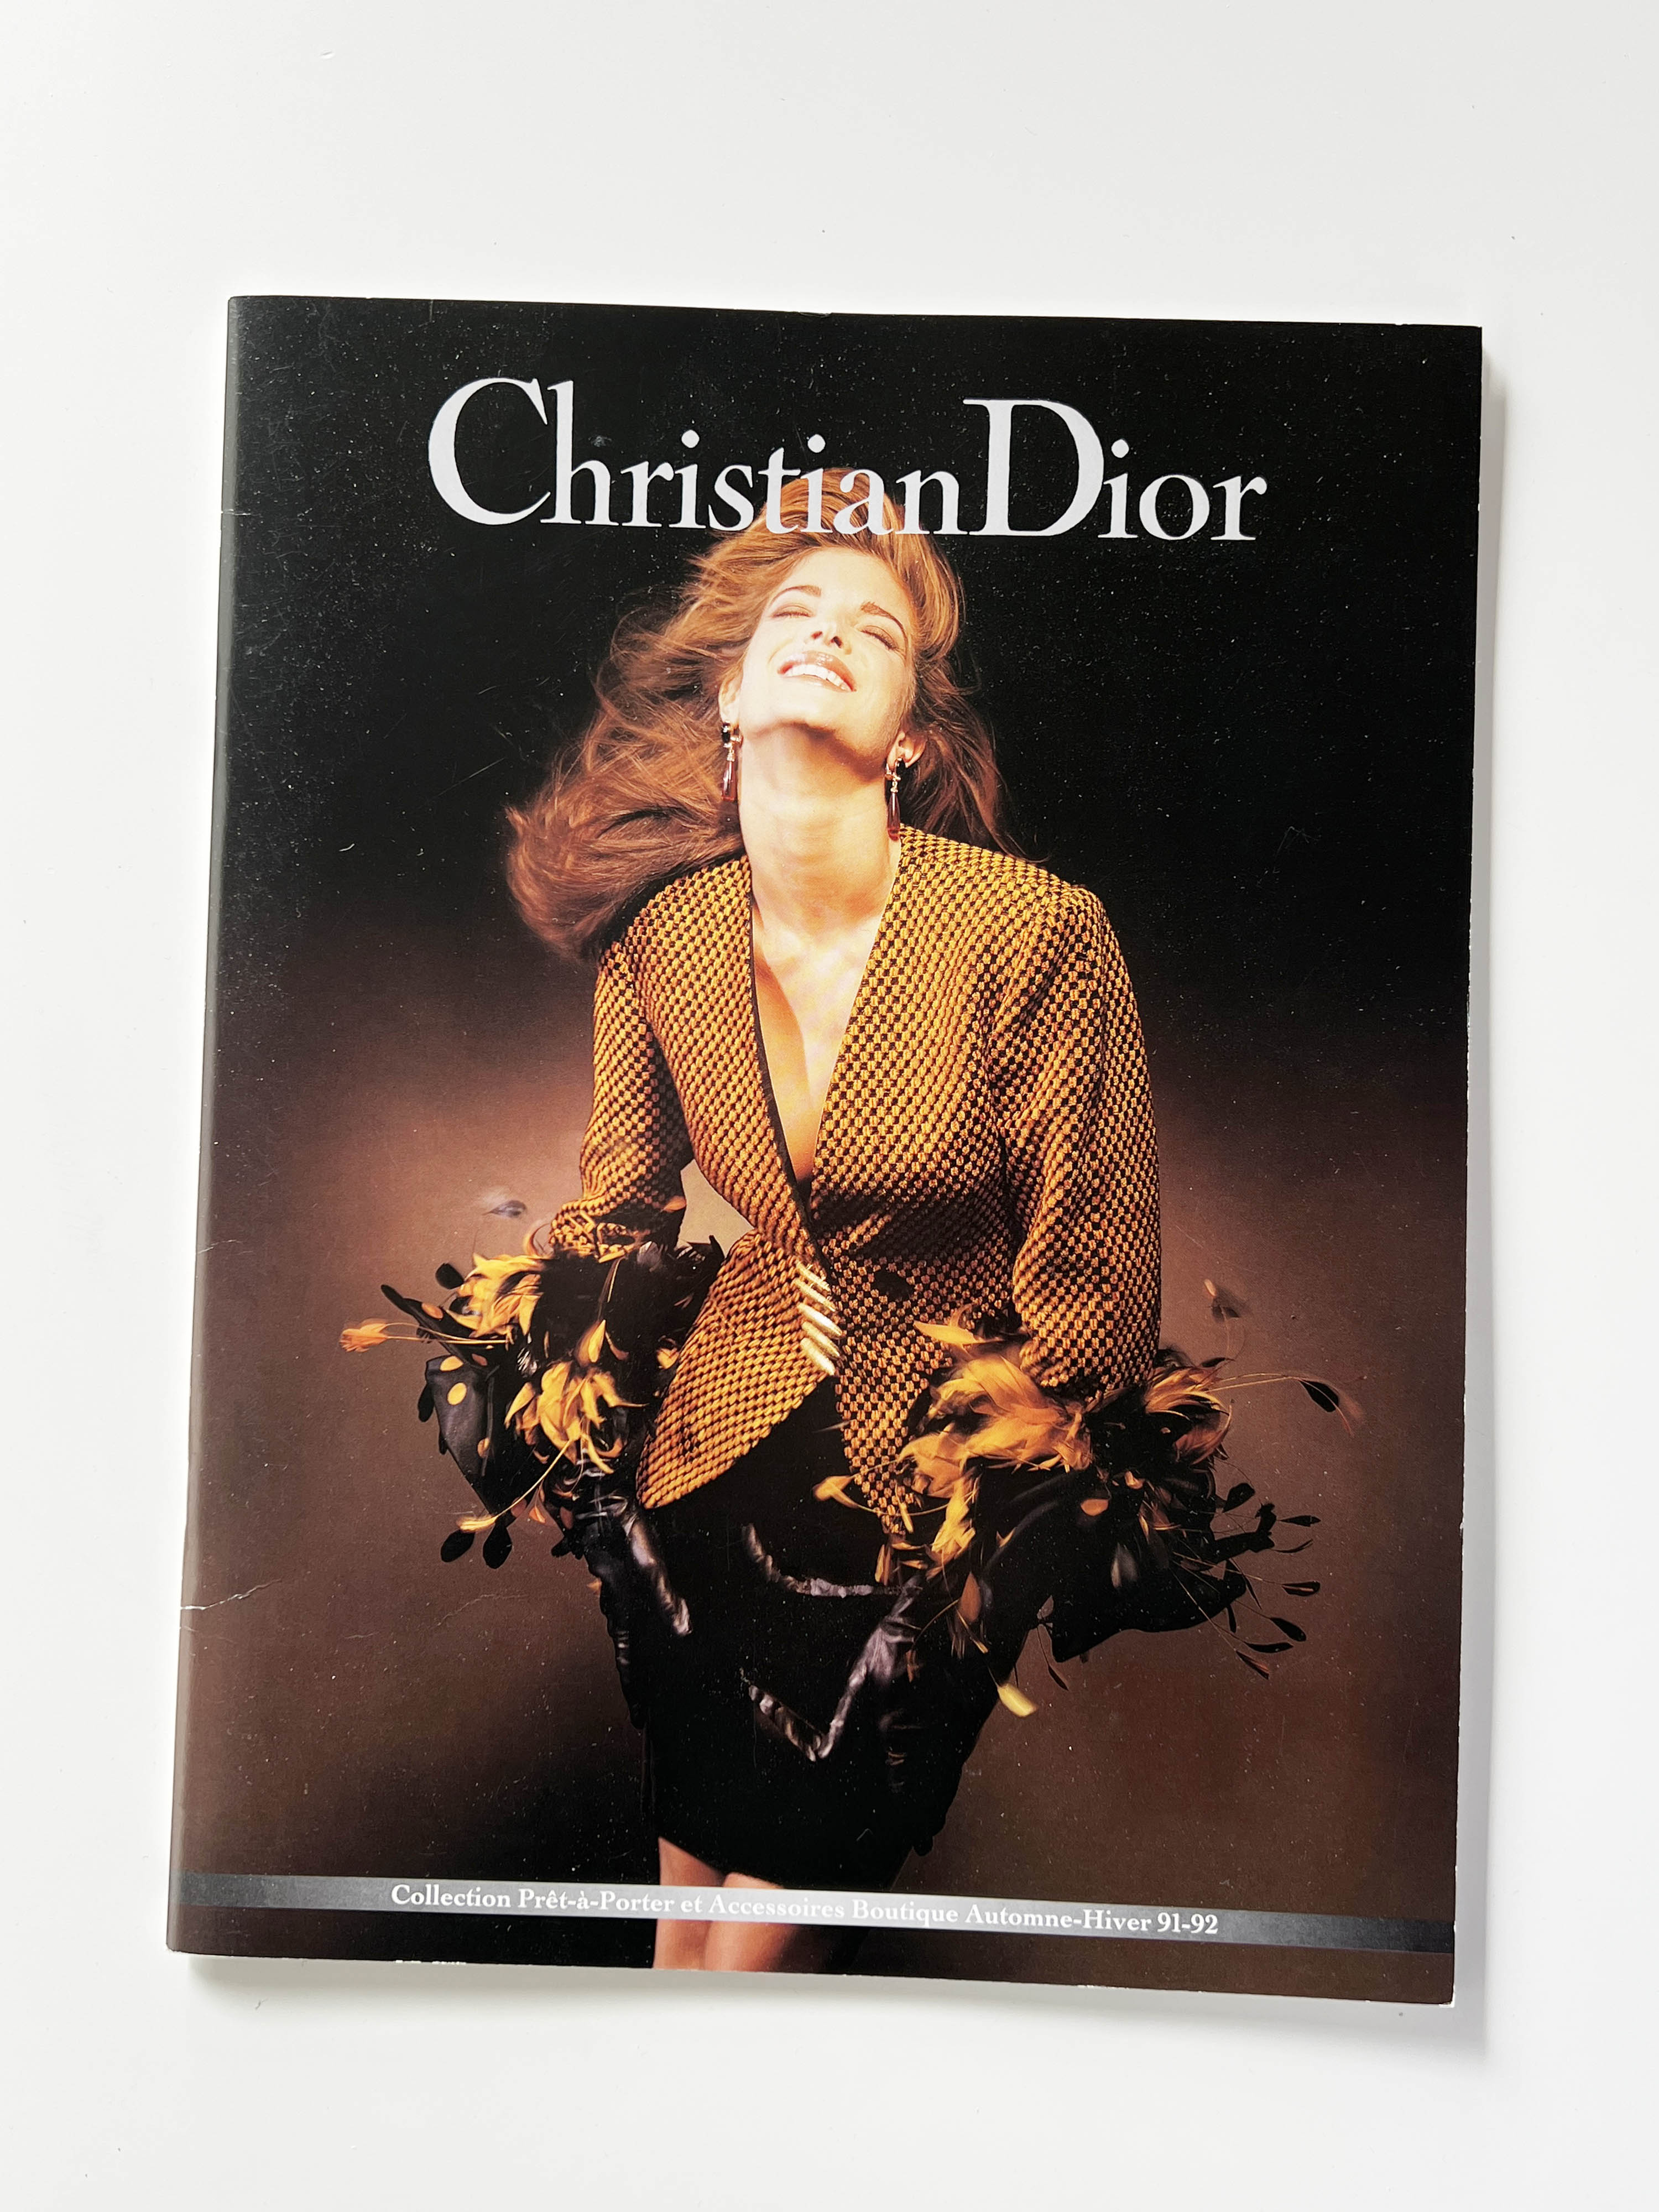 Christian Dior pret-a-porter AW 91-92 magazine